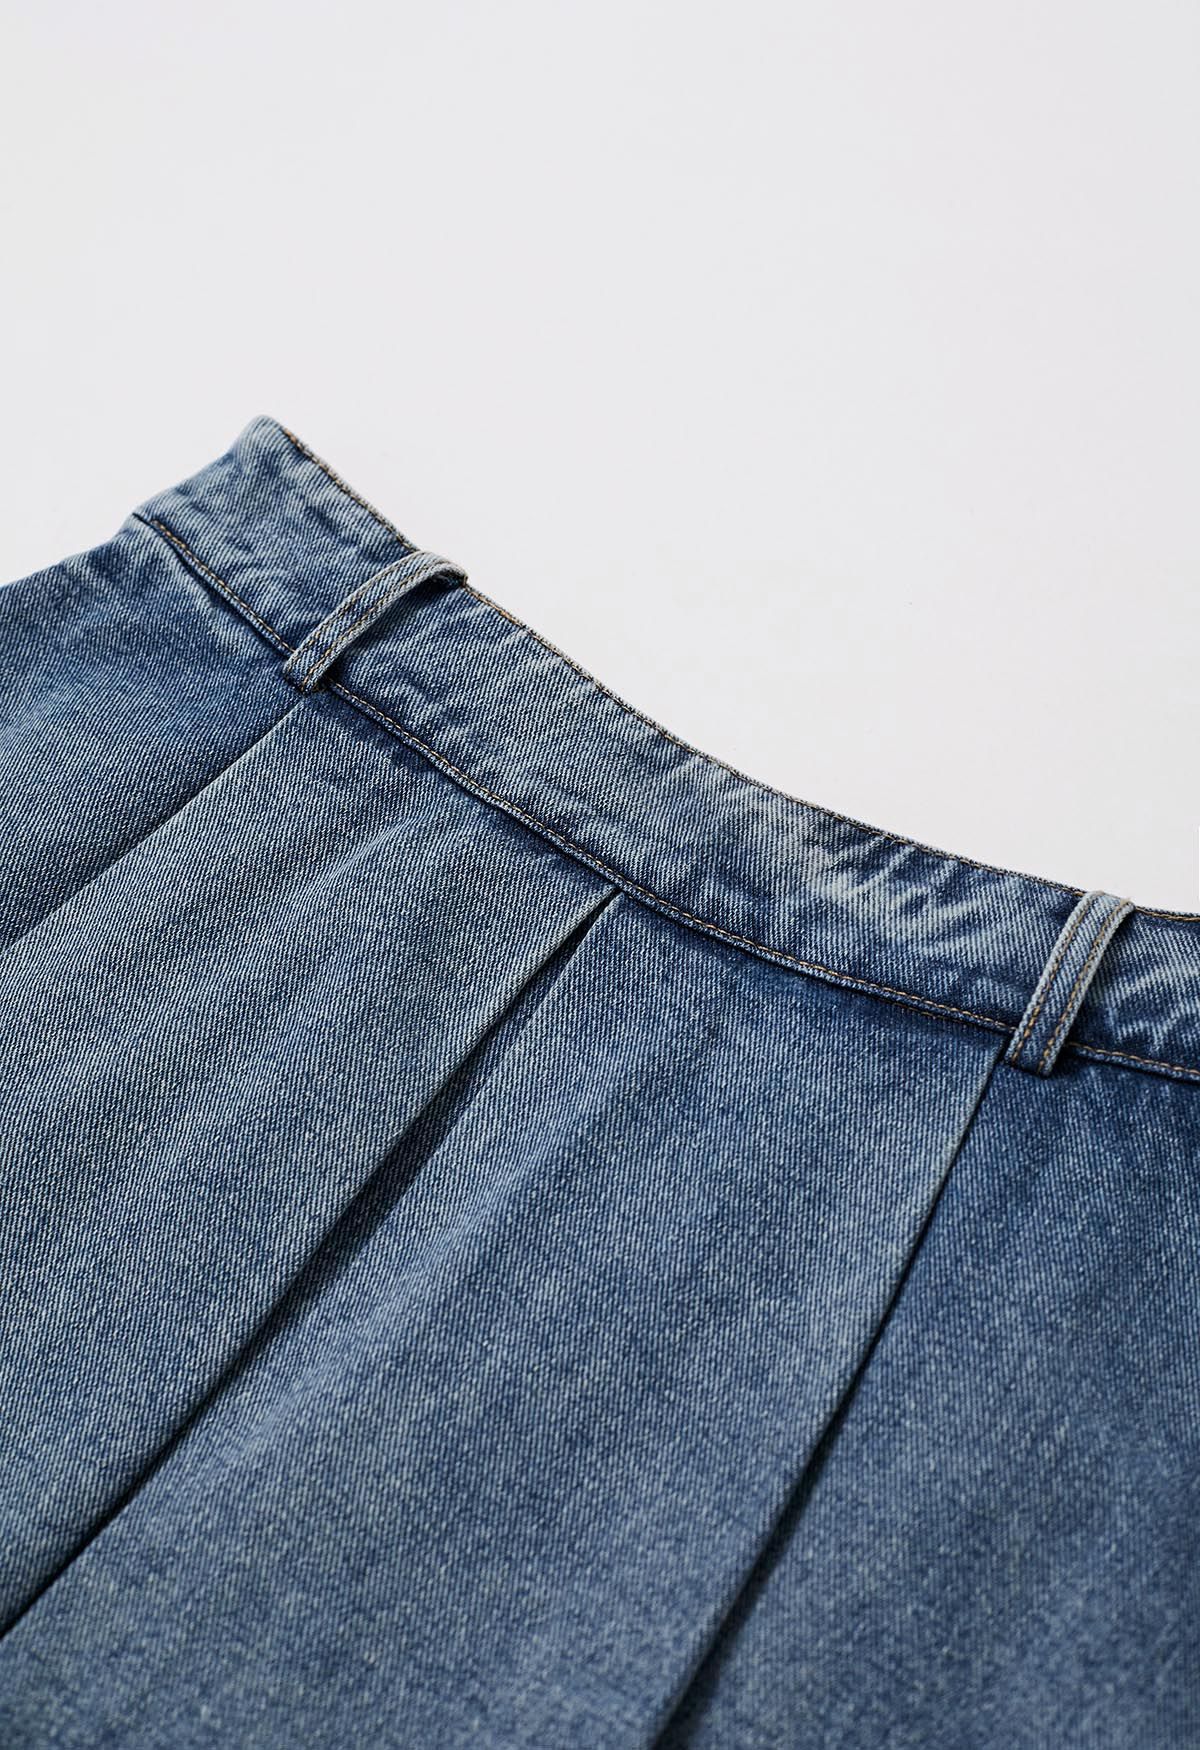 Mini-jupe-short en jean avec ceinture plissée sur le devant, bleu